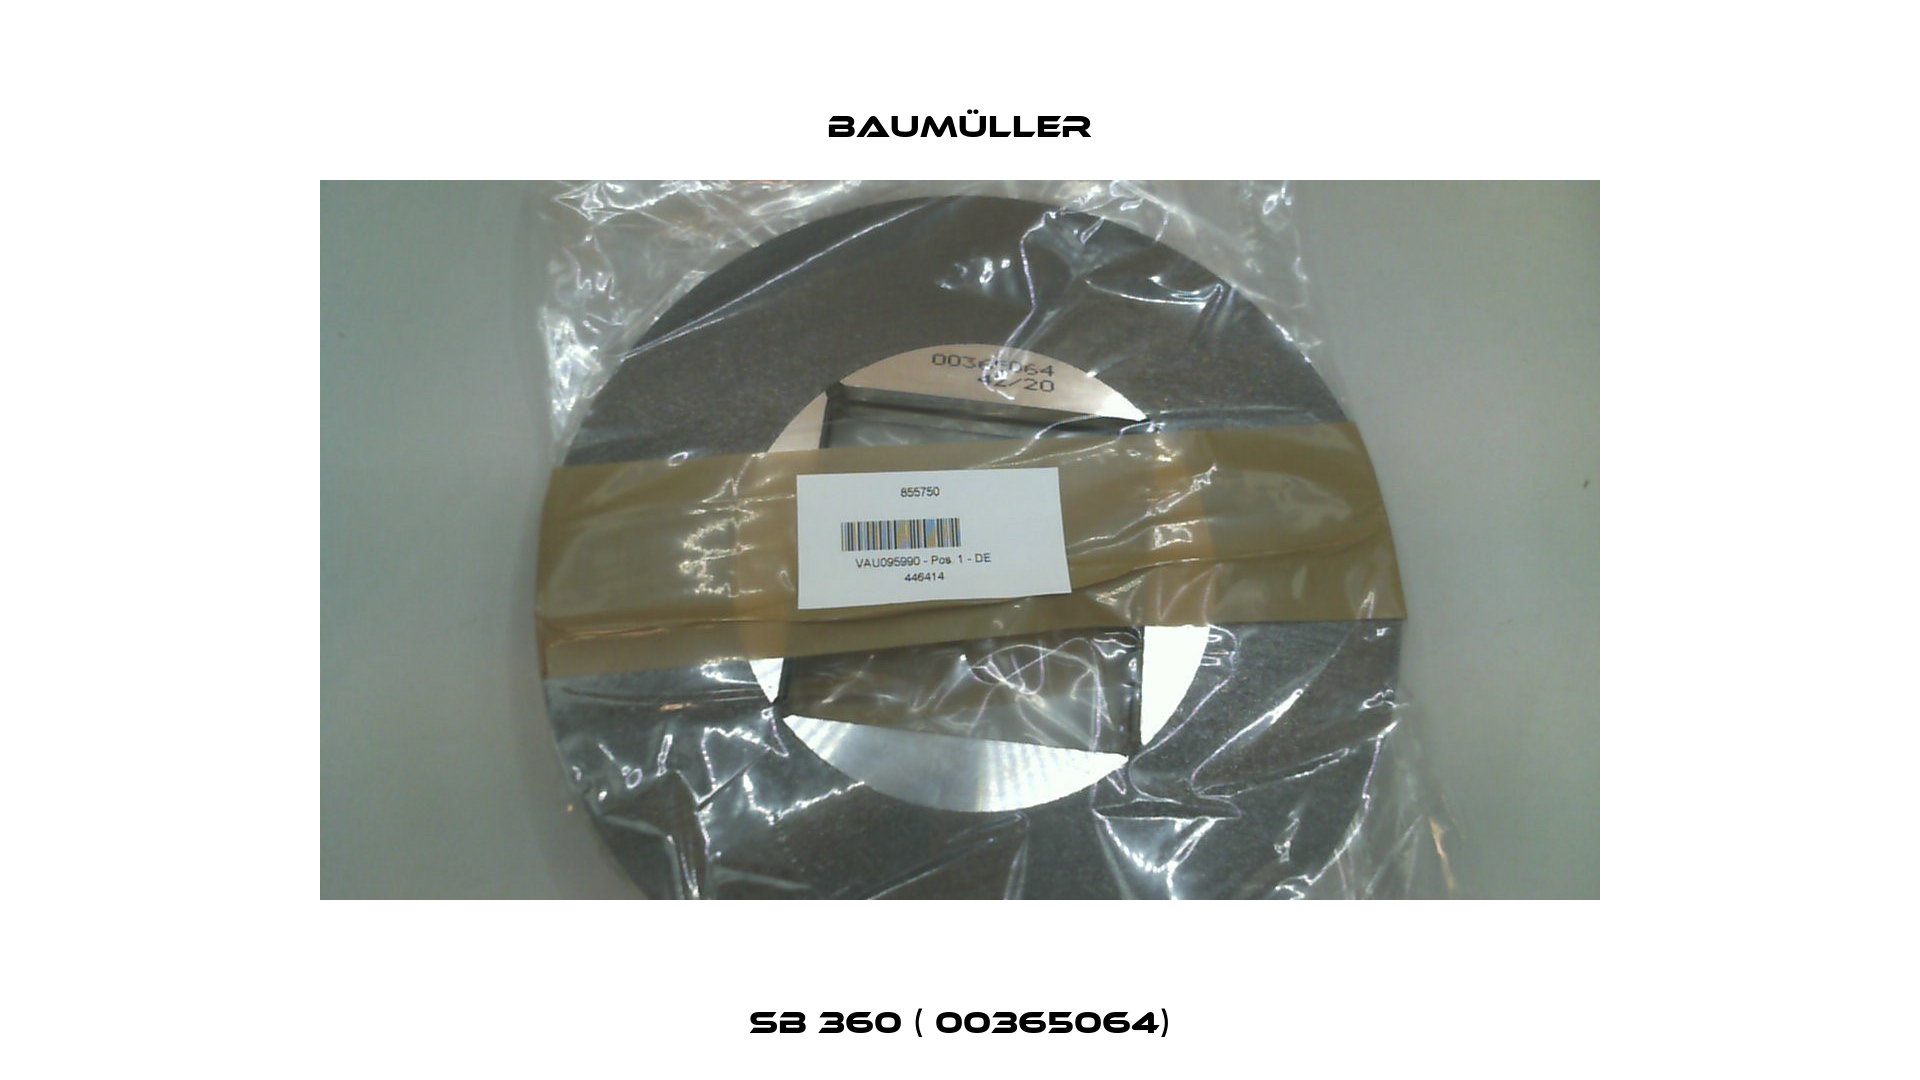 SB 360 ( 00365064) Baumüller